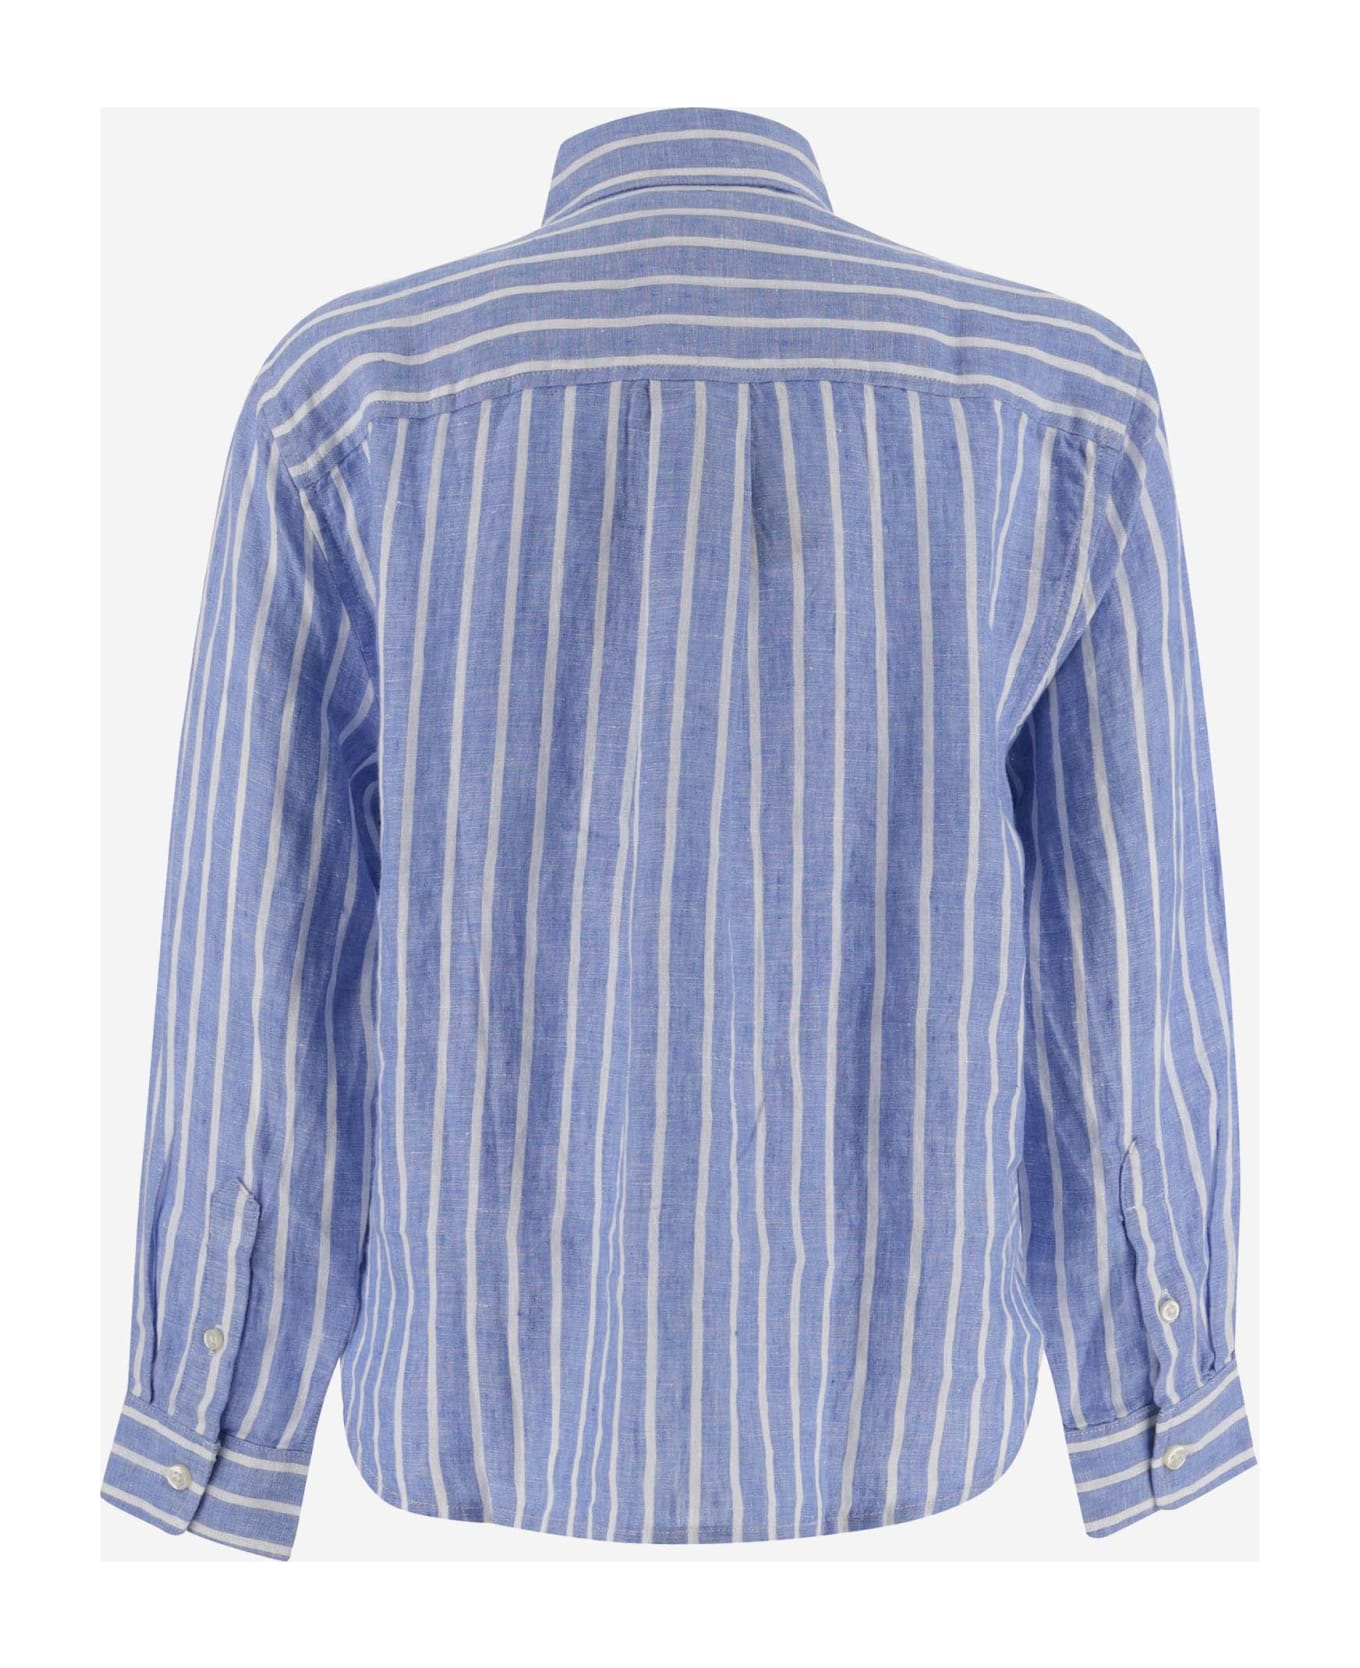 Ralph Lauren Striped Linen Shirt With Logo - LIGHT BLUE